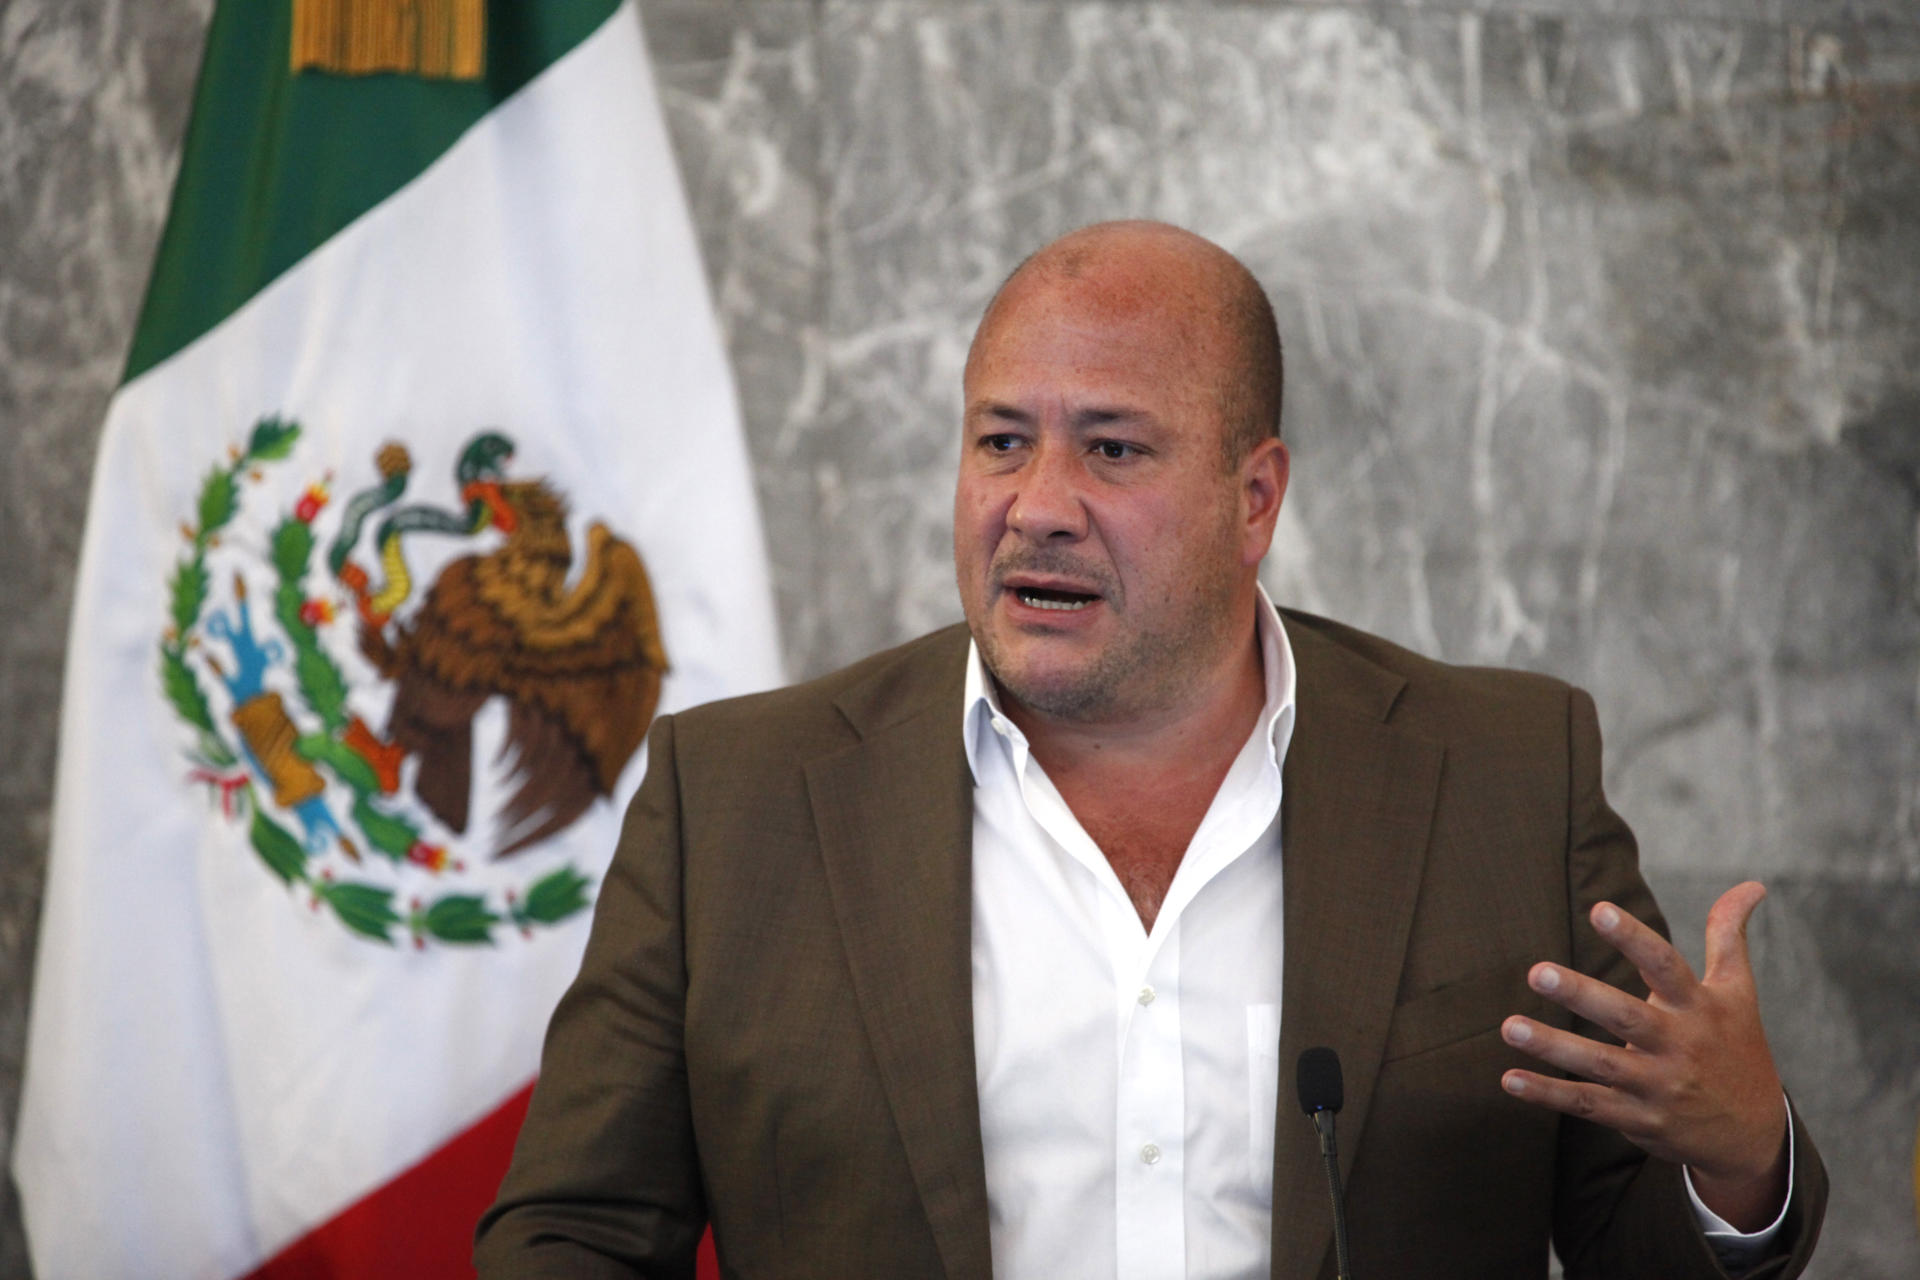 Fotografía de archivo del gobernador de Jalisco Enrique Alfaro, durante una rueda de prensa en la ciudad de Guadalajara, estado de Jalisco (México). EFE/Francisco Guasco